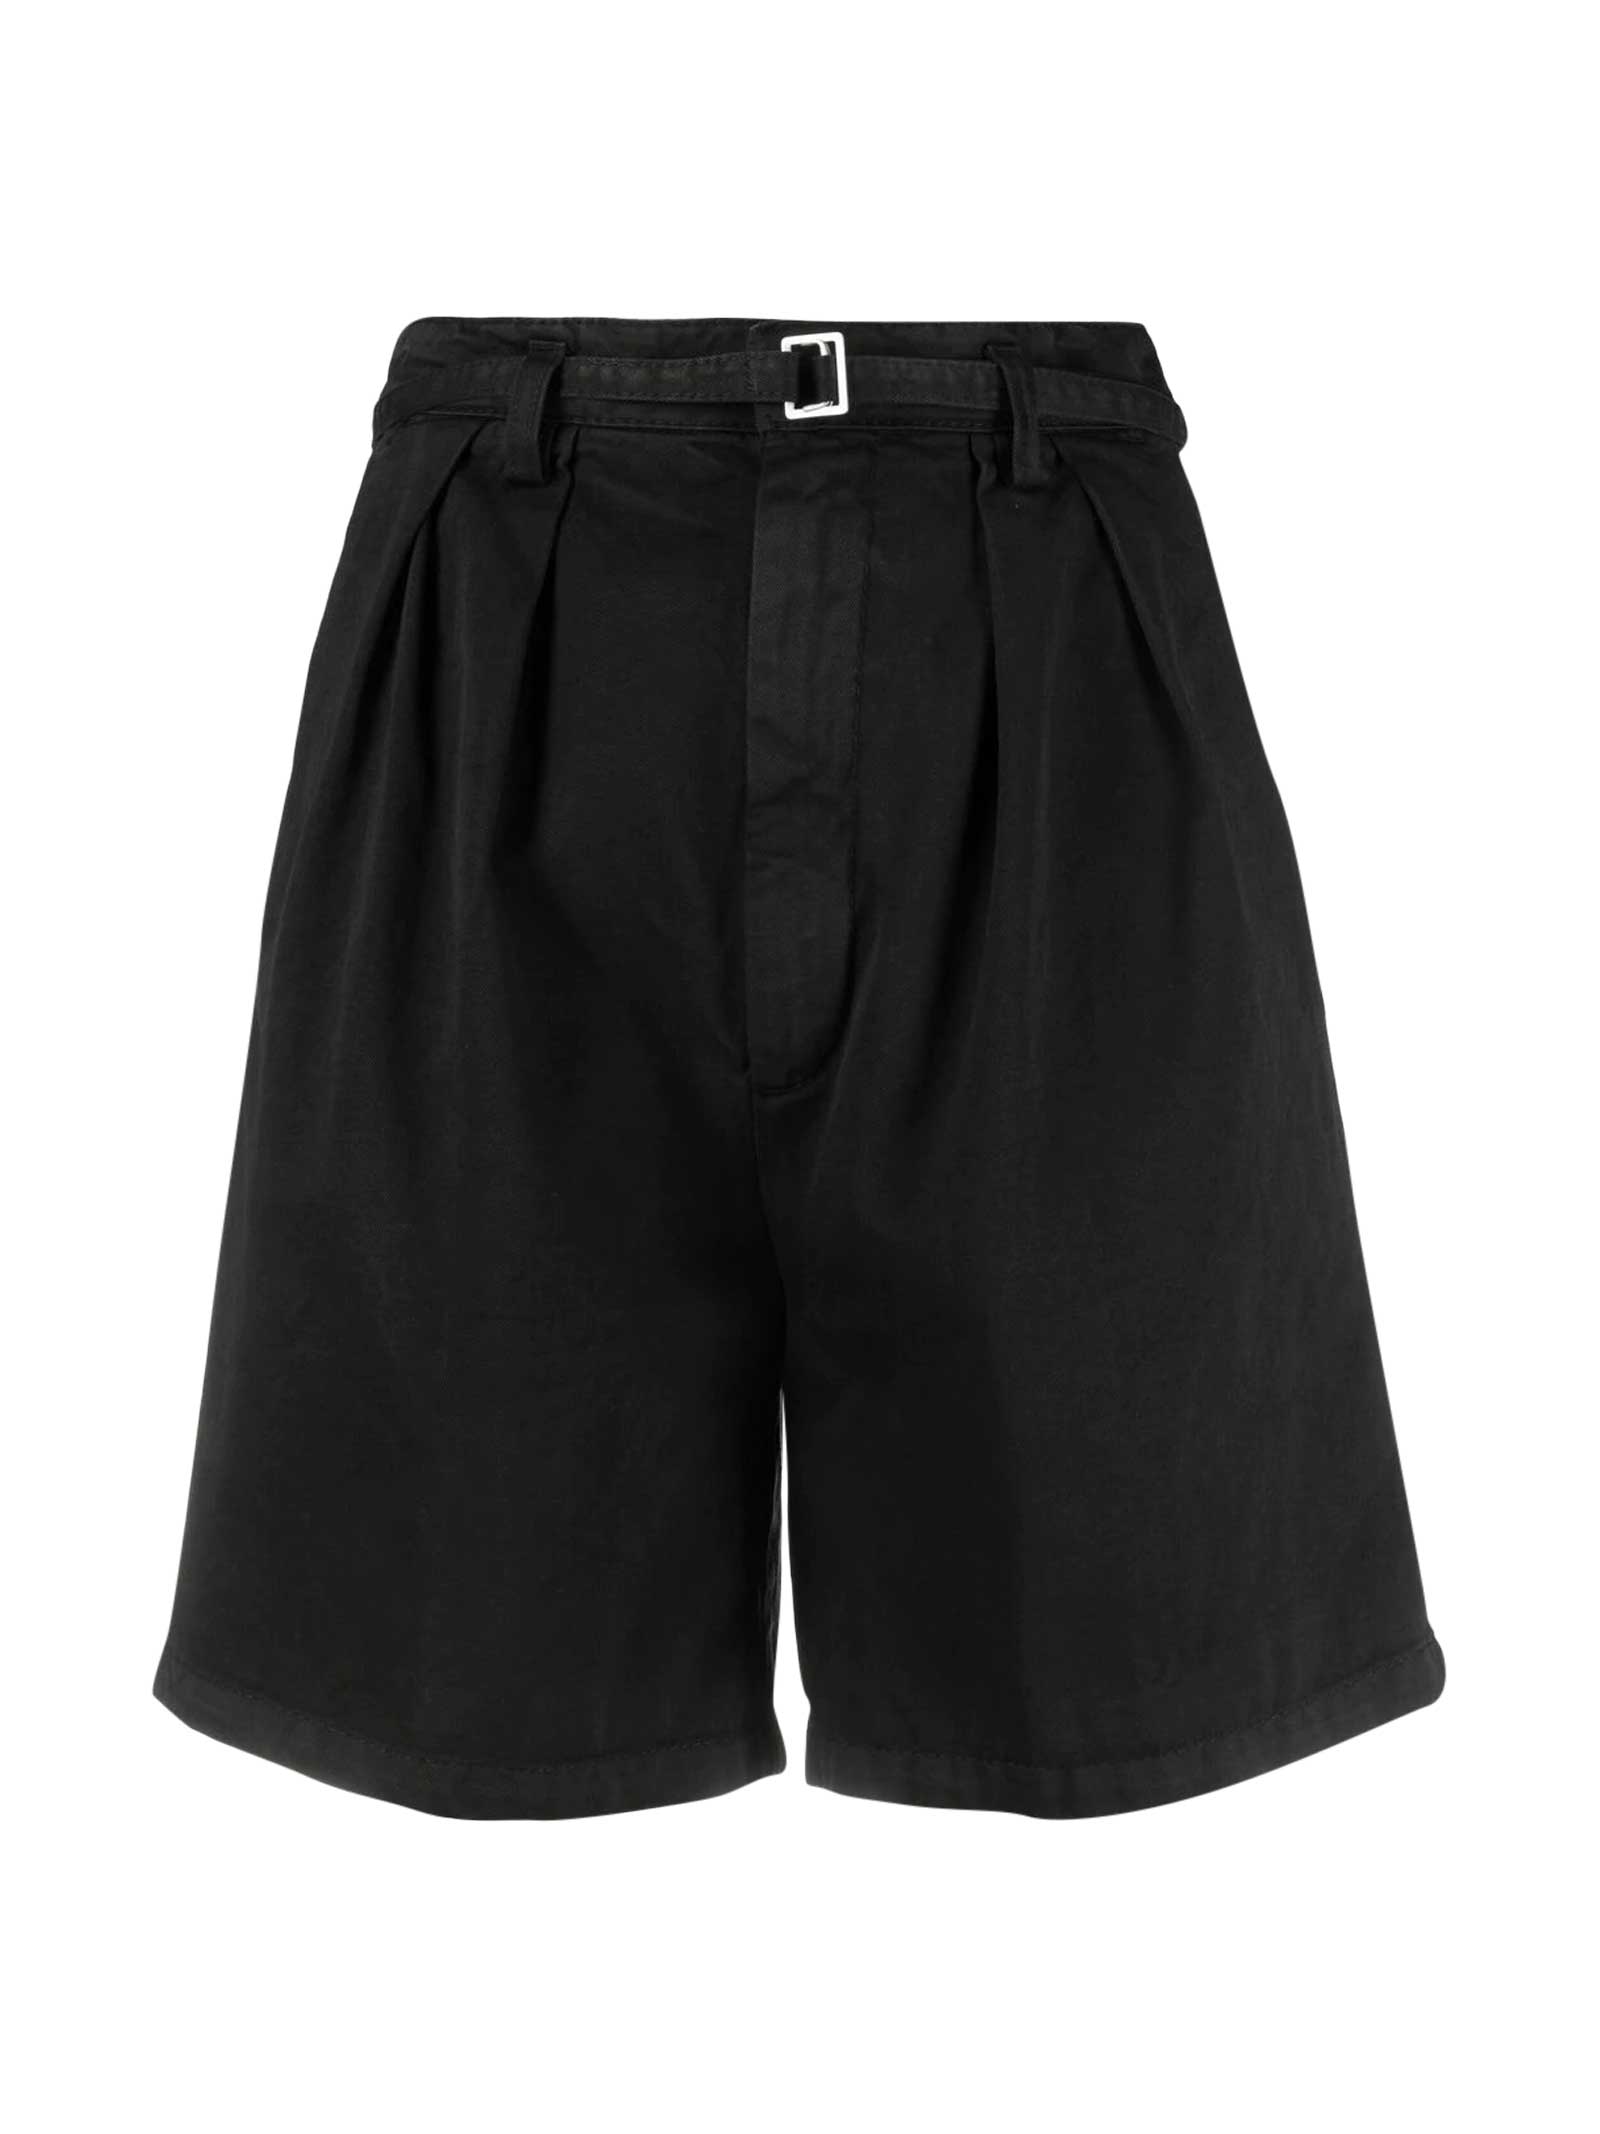 Haikure Black Shorts